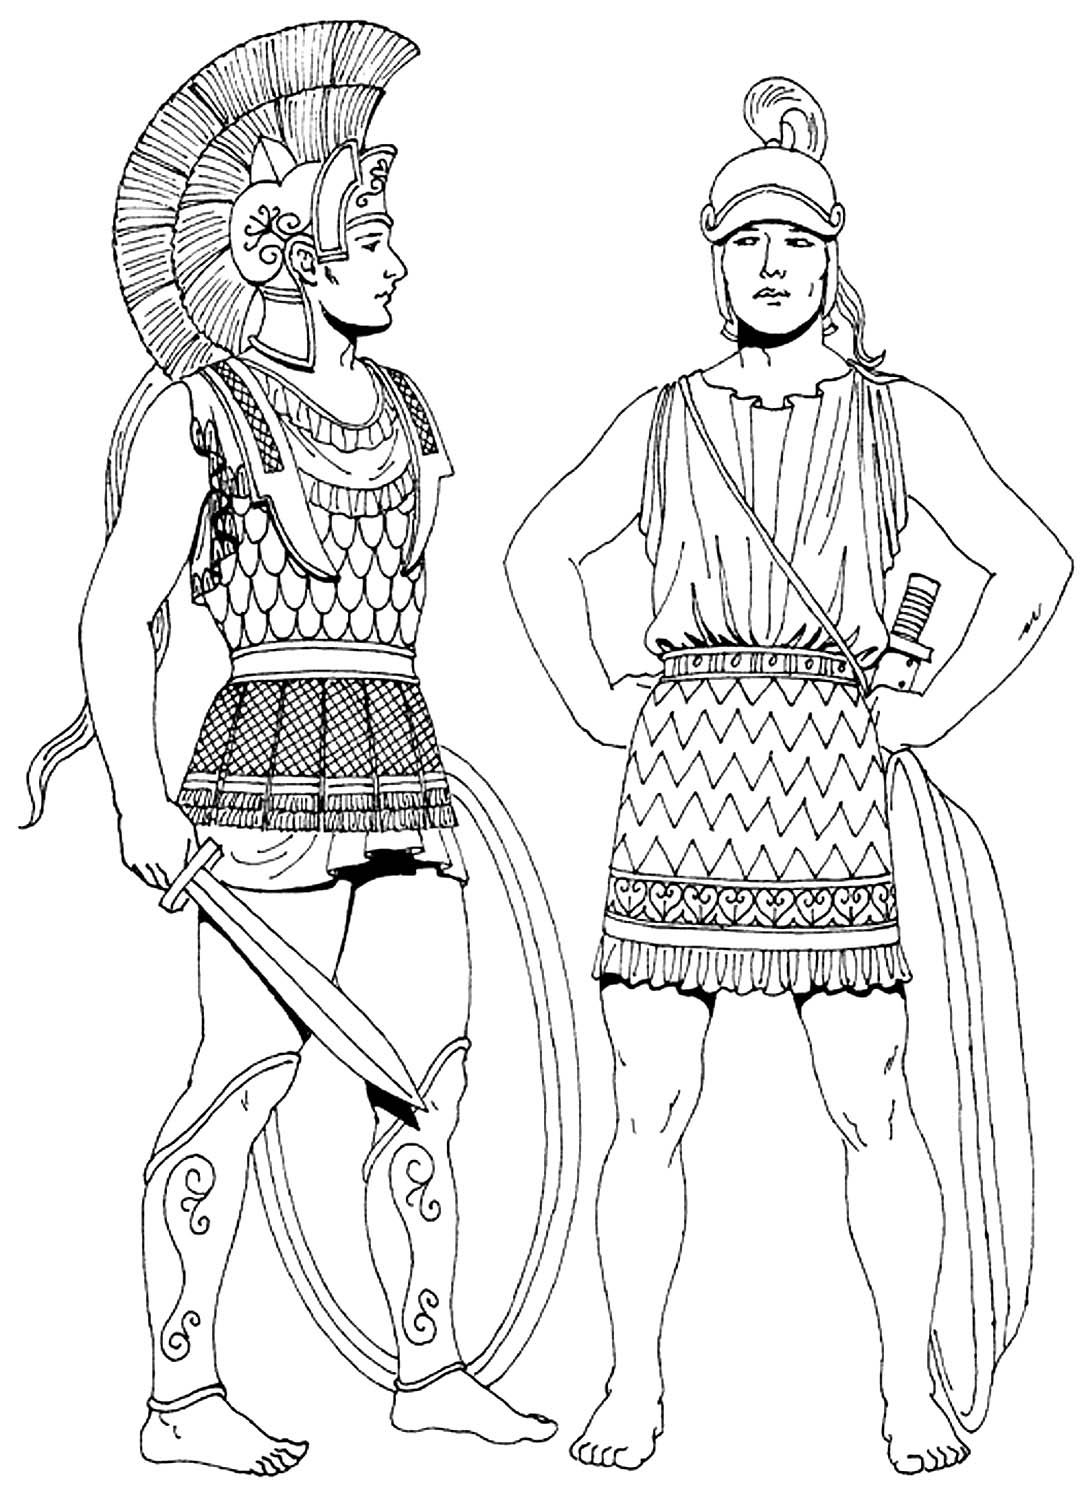 Одежда Войнов древней Греции